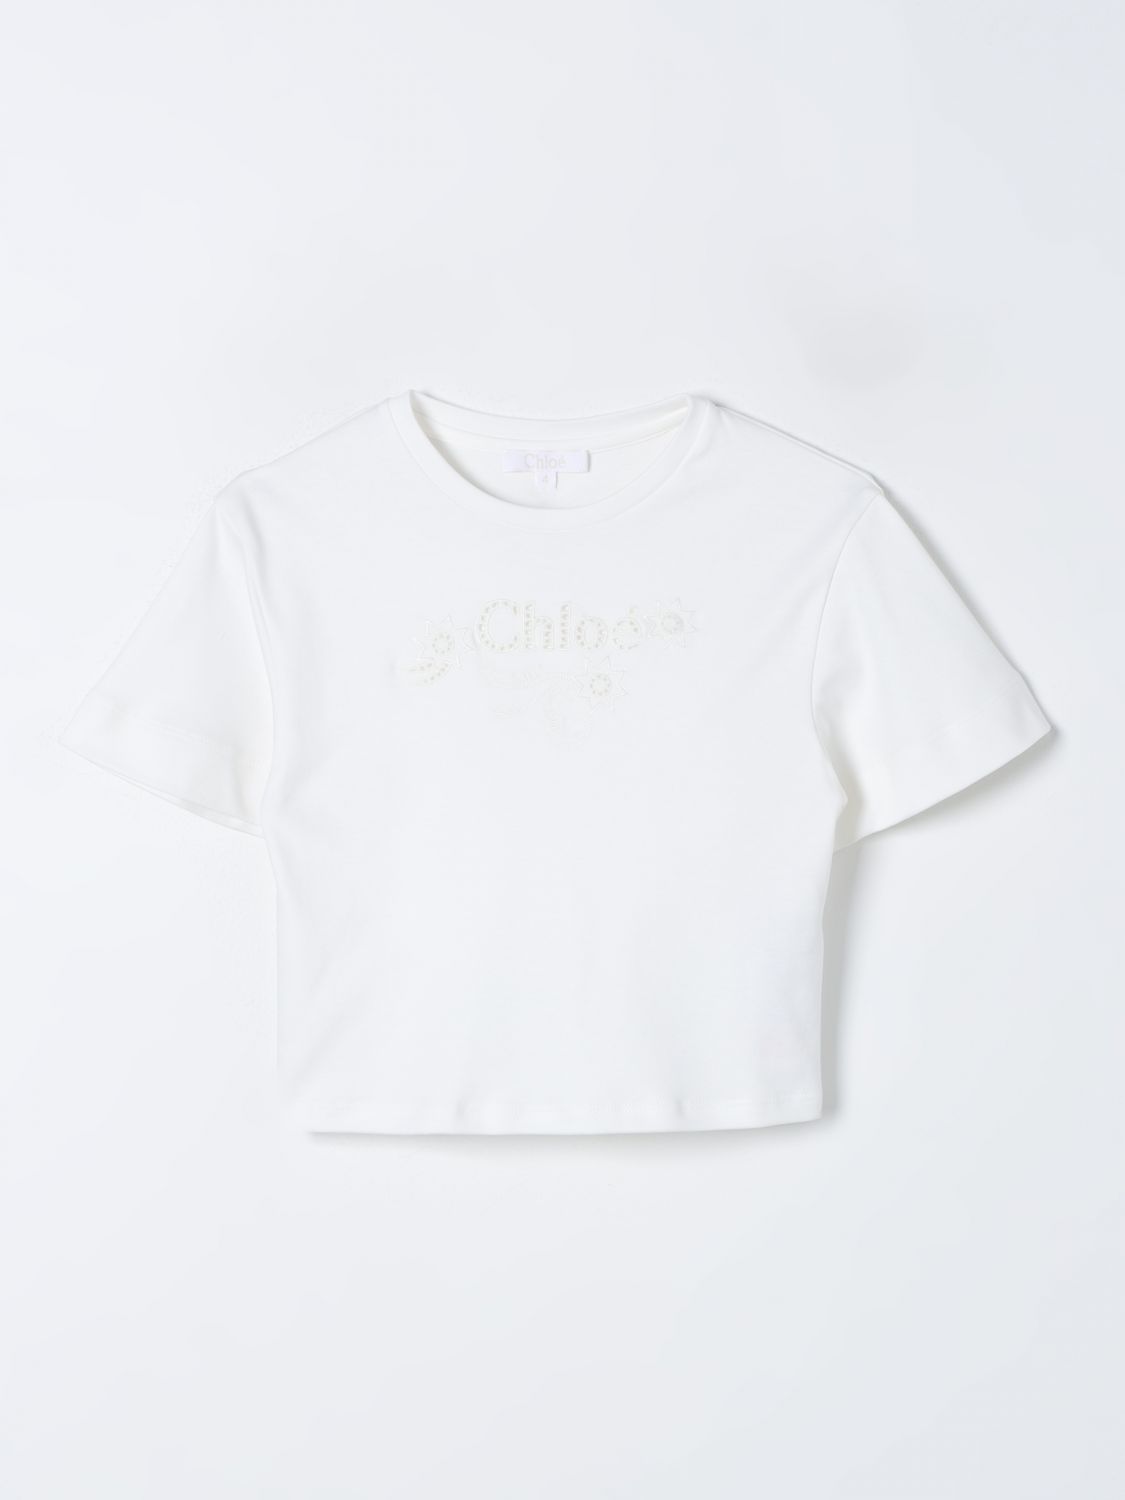 Shop Chloé T-shirt  Kids Color White